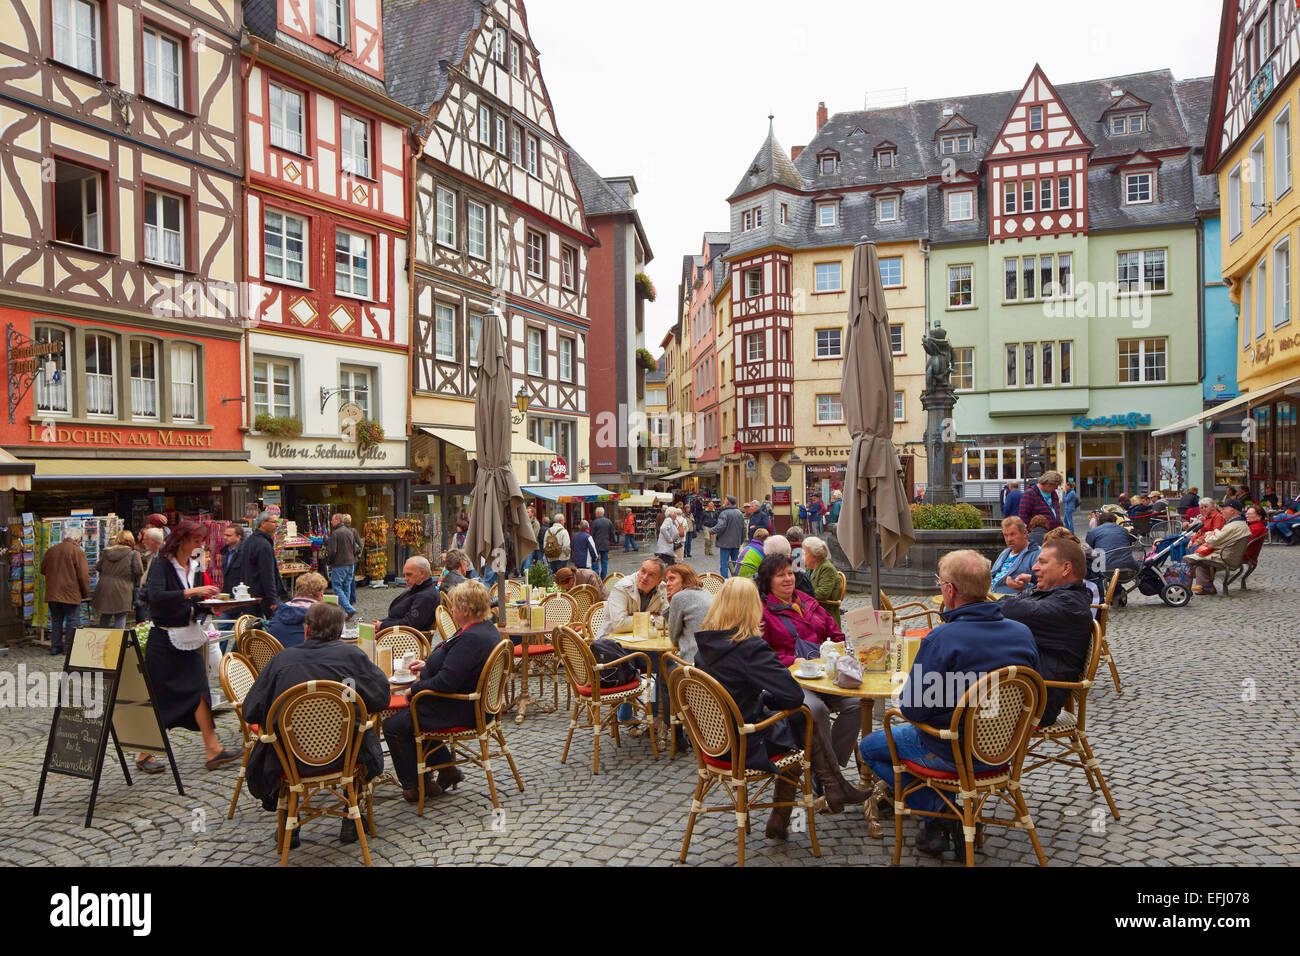 Market square in Cochem, Mosel, Rhineland-Palatinate, Germany, Europe Stock Photo